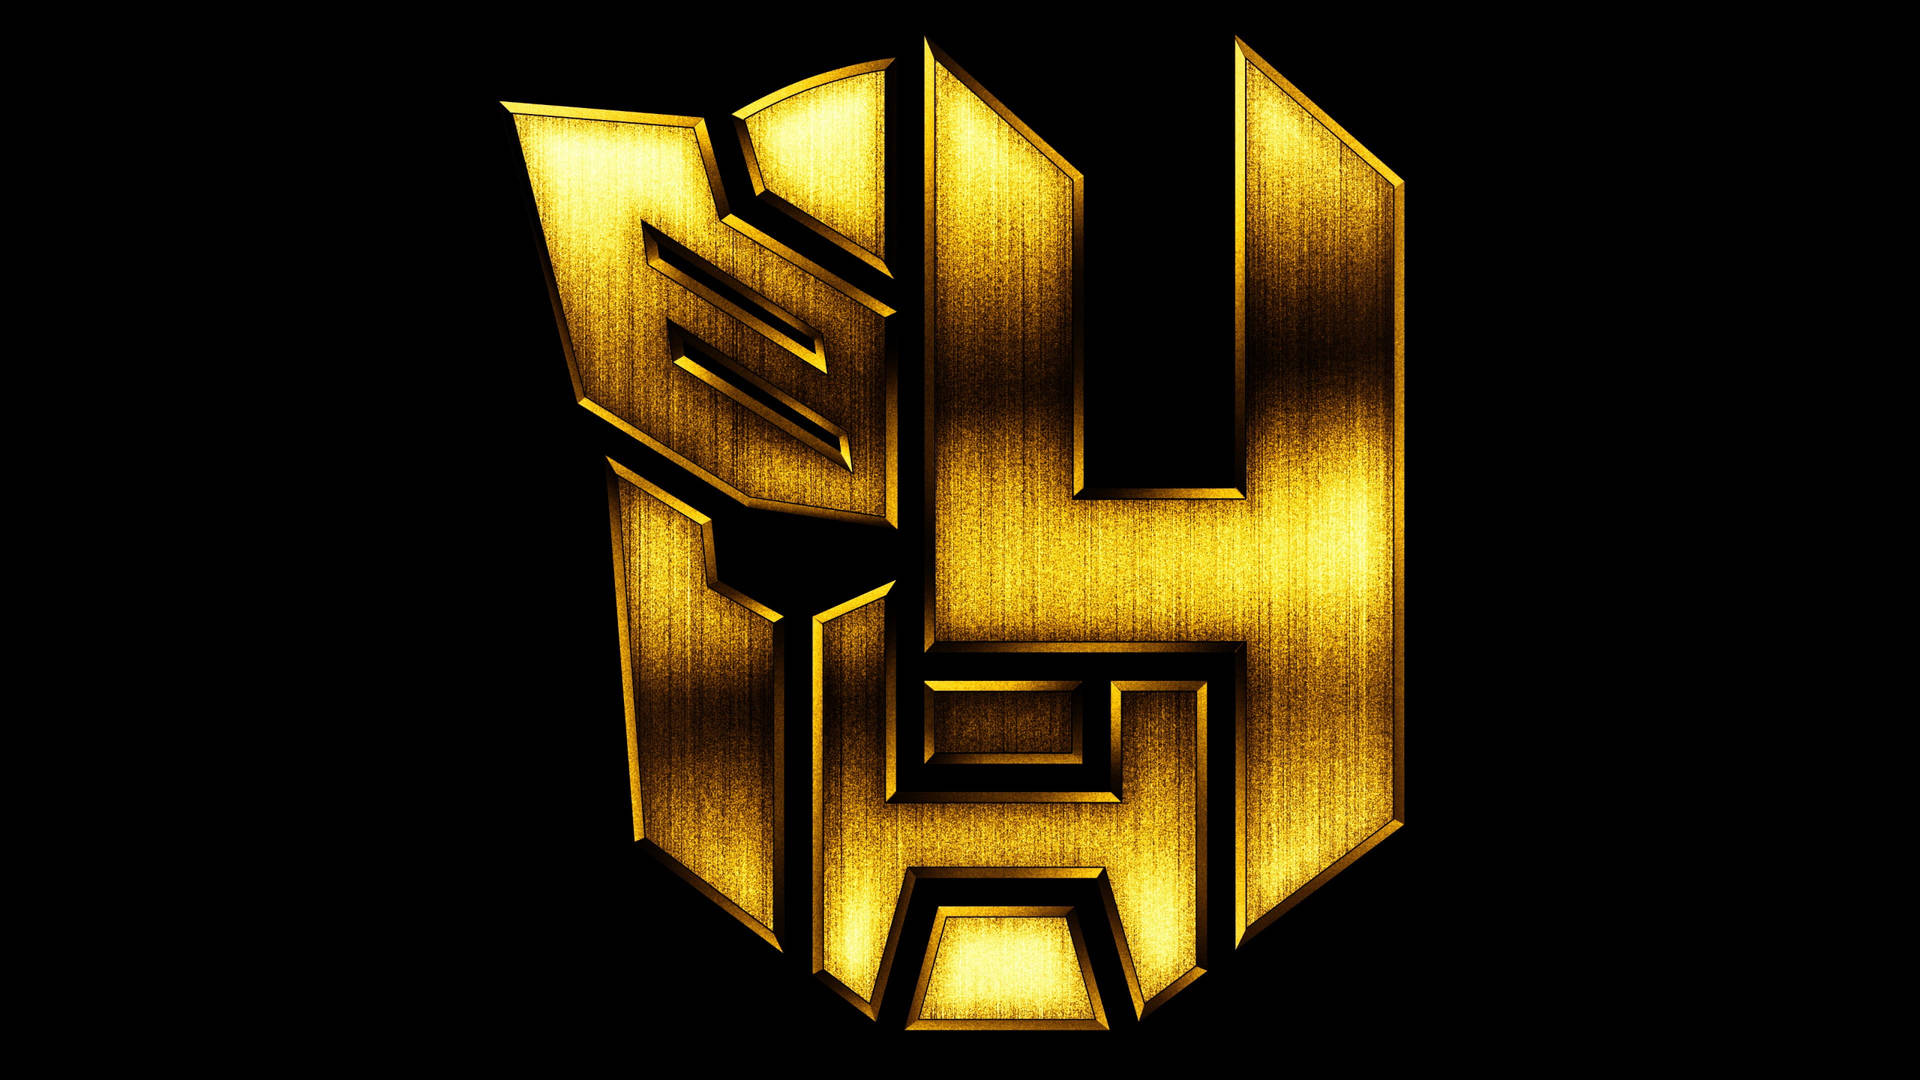 Logotipode Autobots En Negro Y Dorado Fondo de pantalla